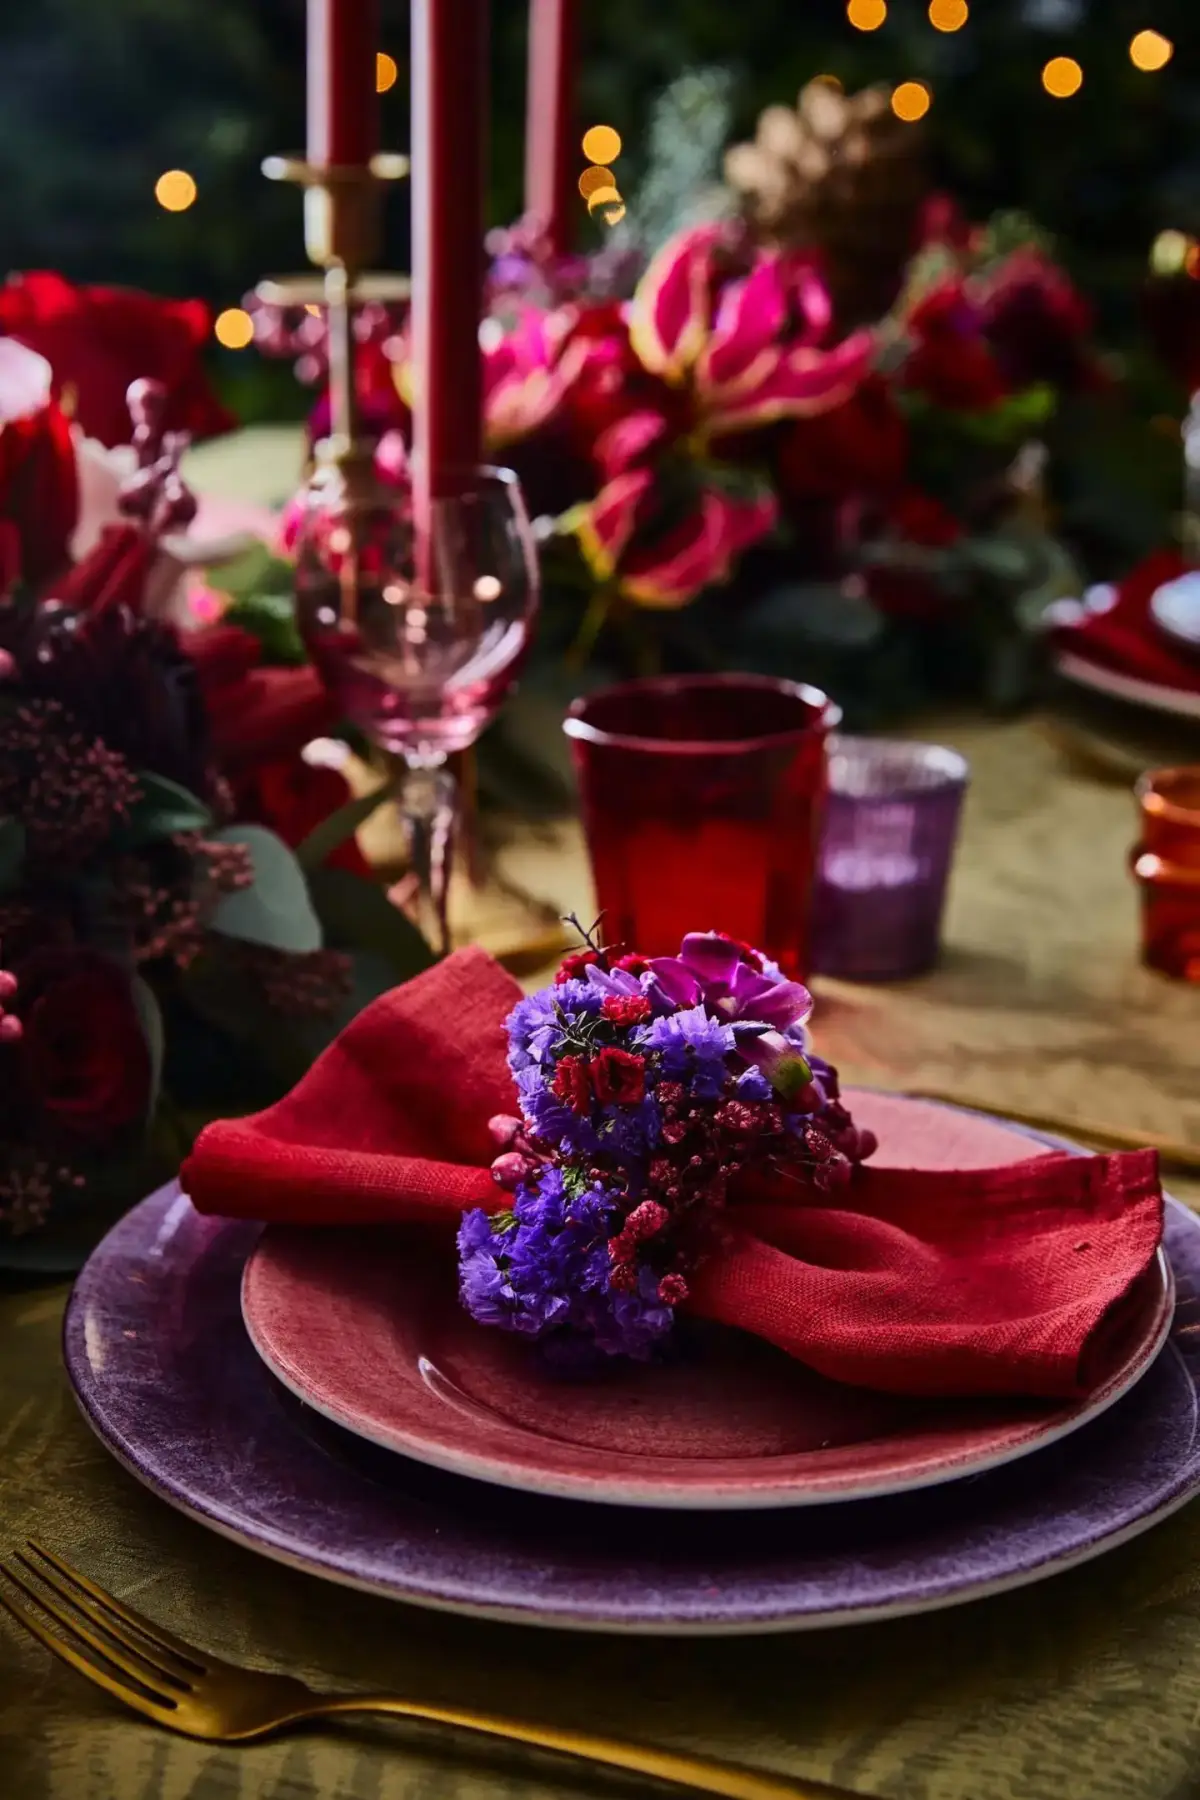 wann faengt man an zu dekorieren für weihnachten winter deko blumen tischdeko in weinrot und pflaumenlila servietten rot blumen